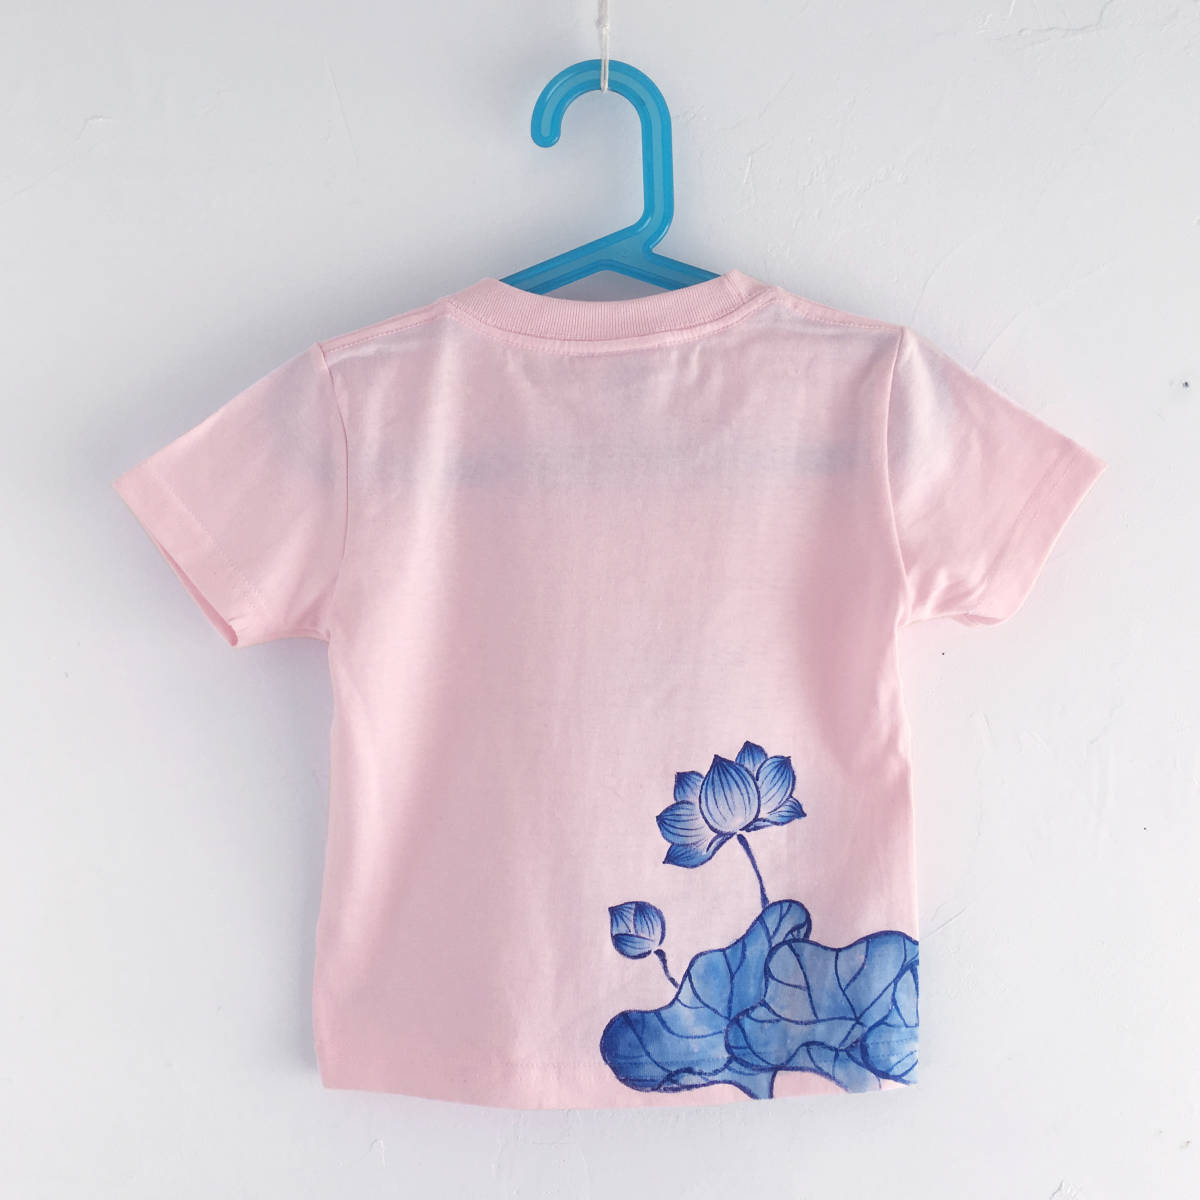 キッズ Tシャツ 120サイズ ピンク 蓮柄Tシャツ 手描きで描いた蓮の花柄Tシャツ 半袖 和柄 和風 レトロ ハンドメイド